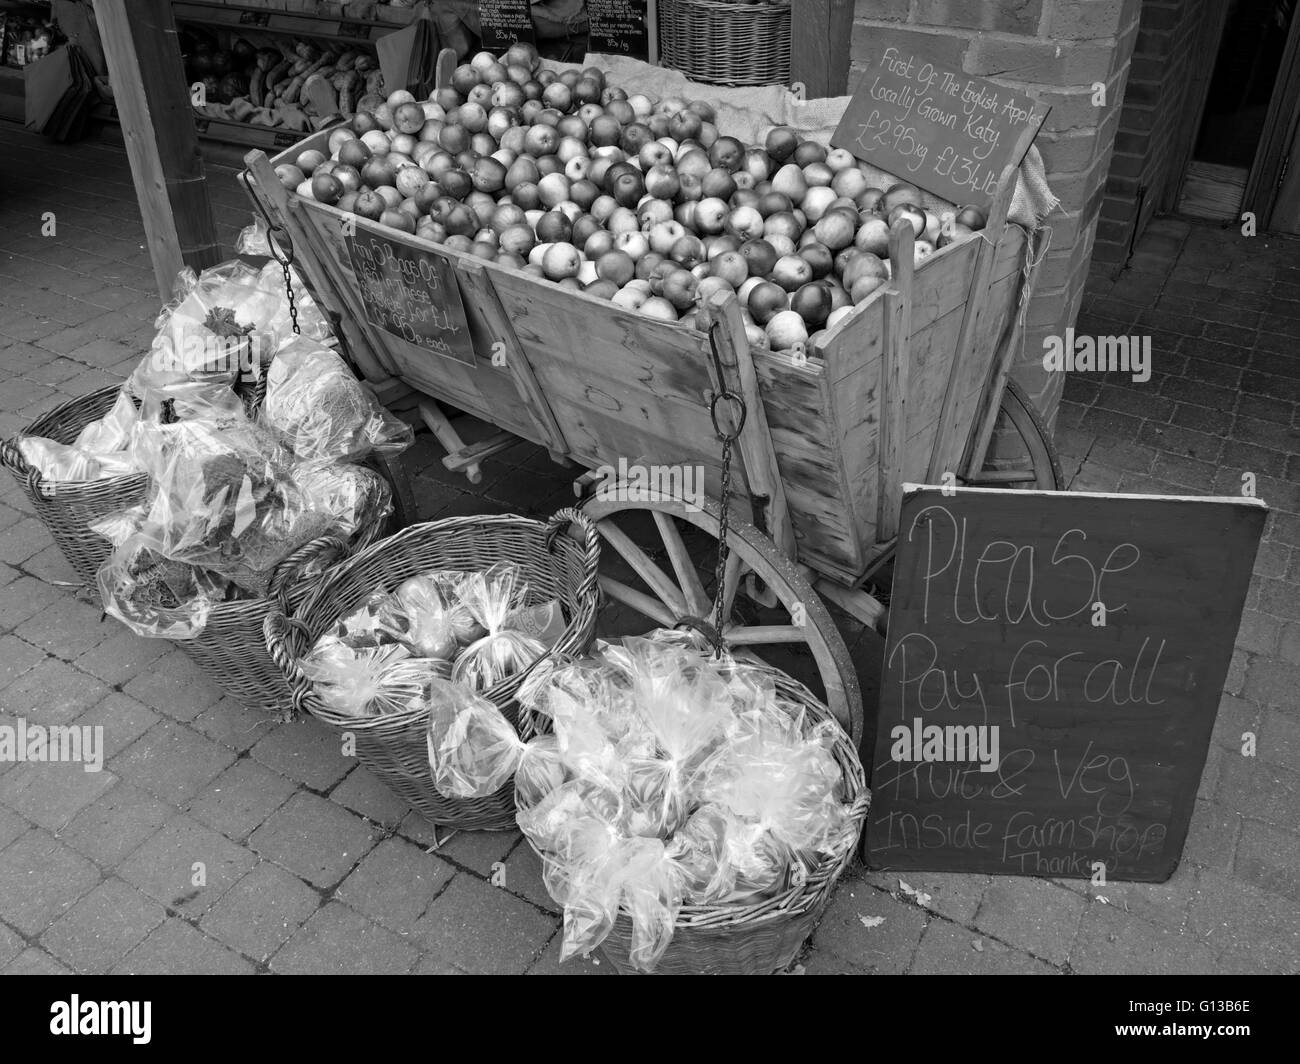 Anglais cultivés localement les pommes à vendre en bois de style ancien panier de pommes, ferme boutique, Doddington, Lincolnshire, Angleterre, Royaume-Uni. Banque D'Images